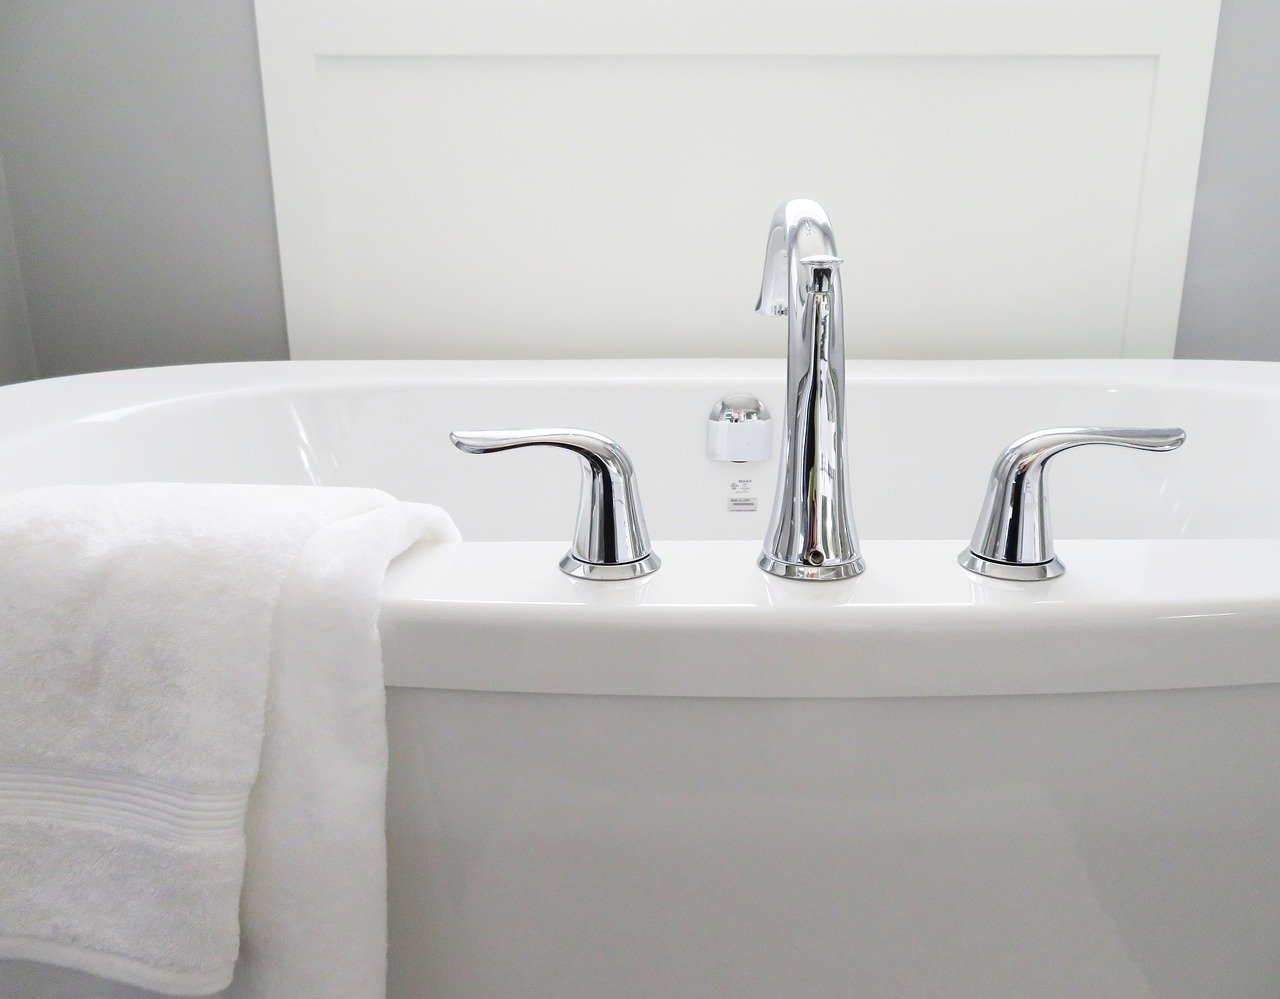 お風呂に入っても節約できる 一人暮らしの入浴のコツをご紹介 宅配型収納caraeto カラエト